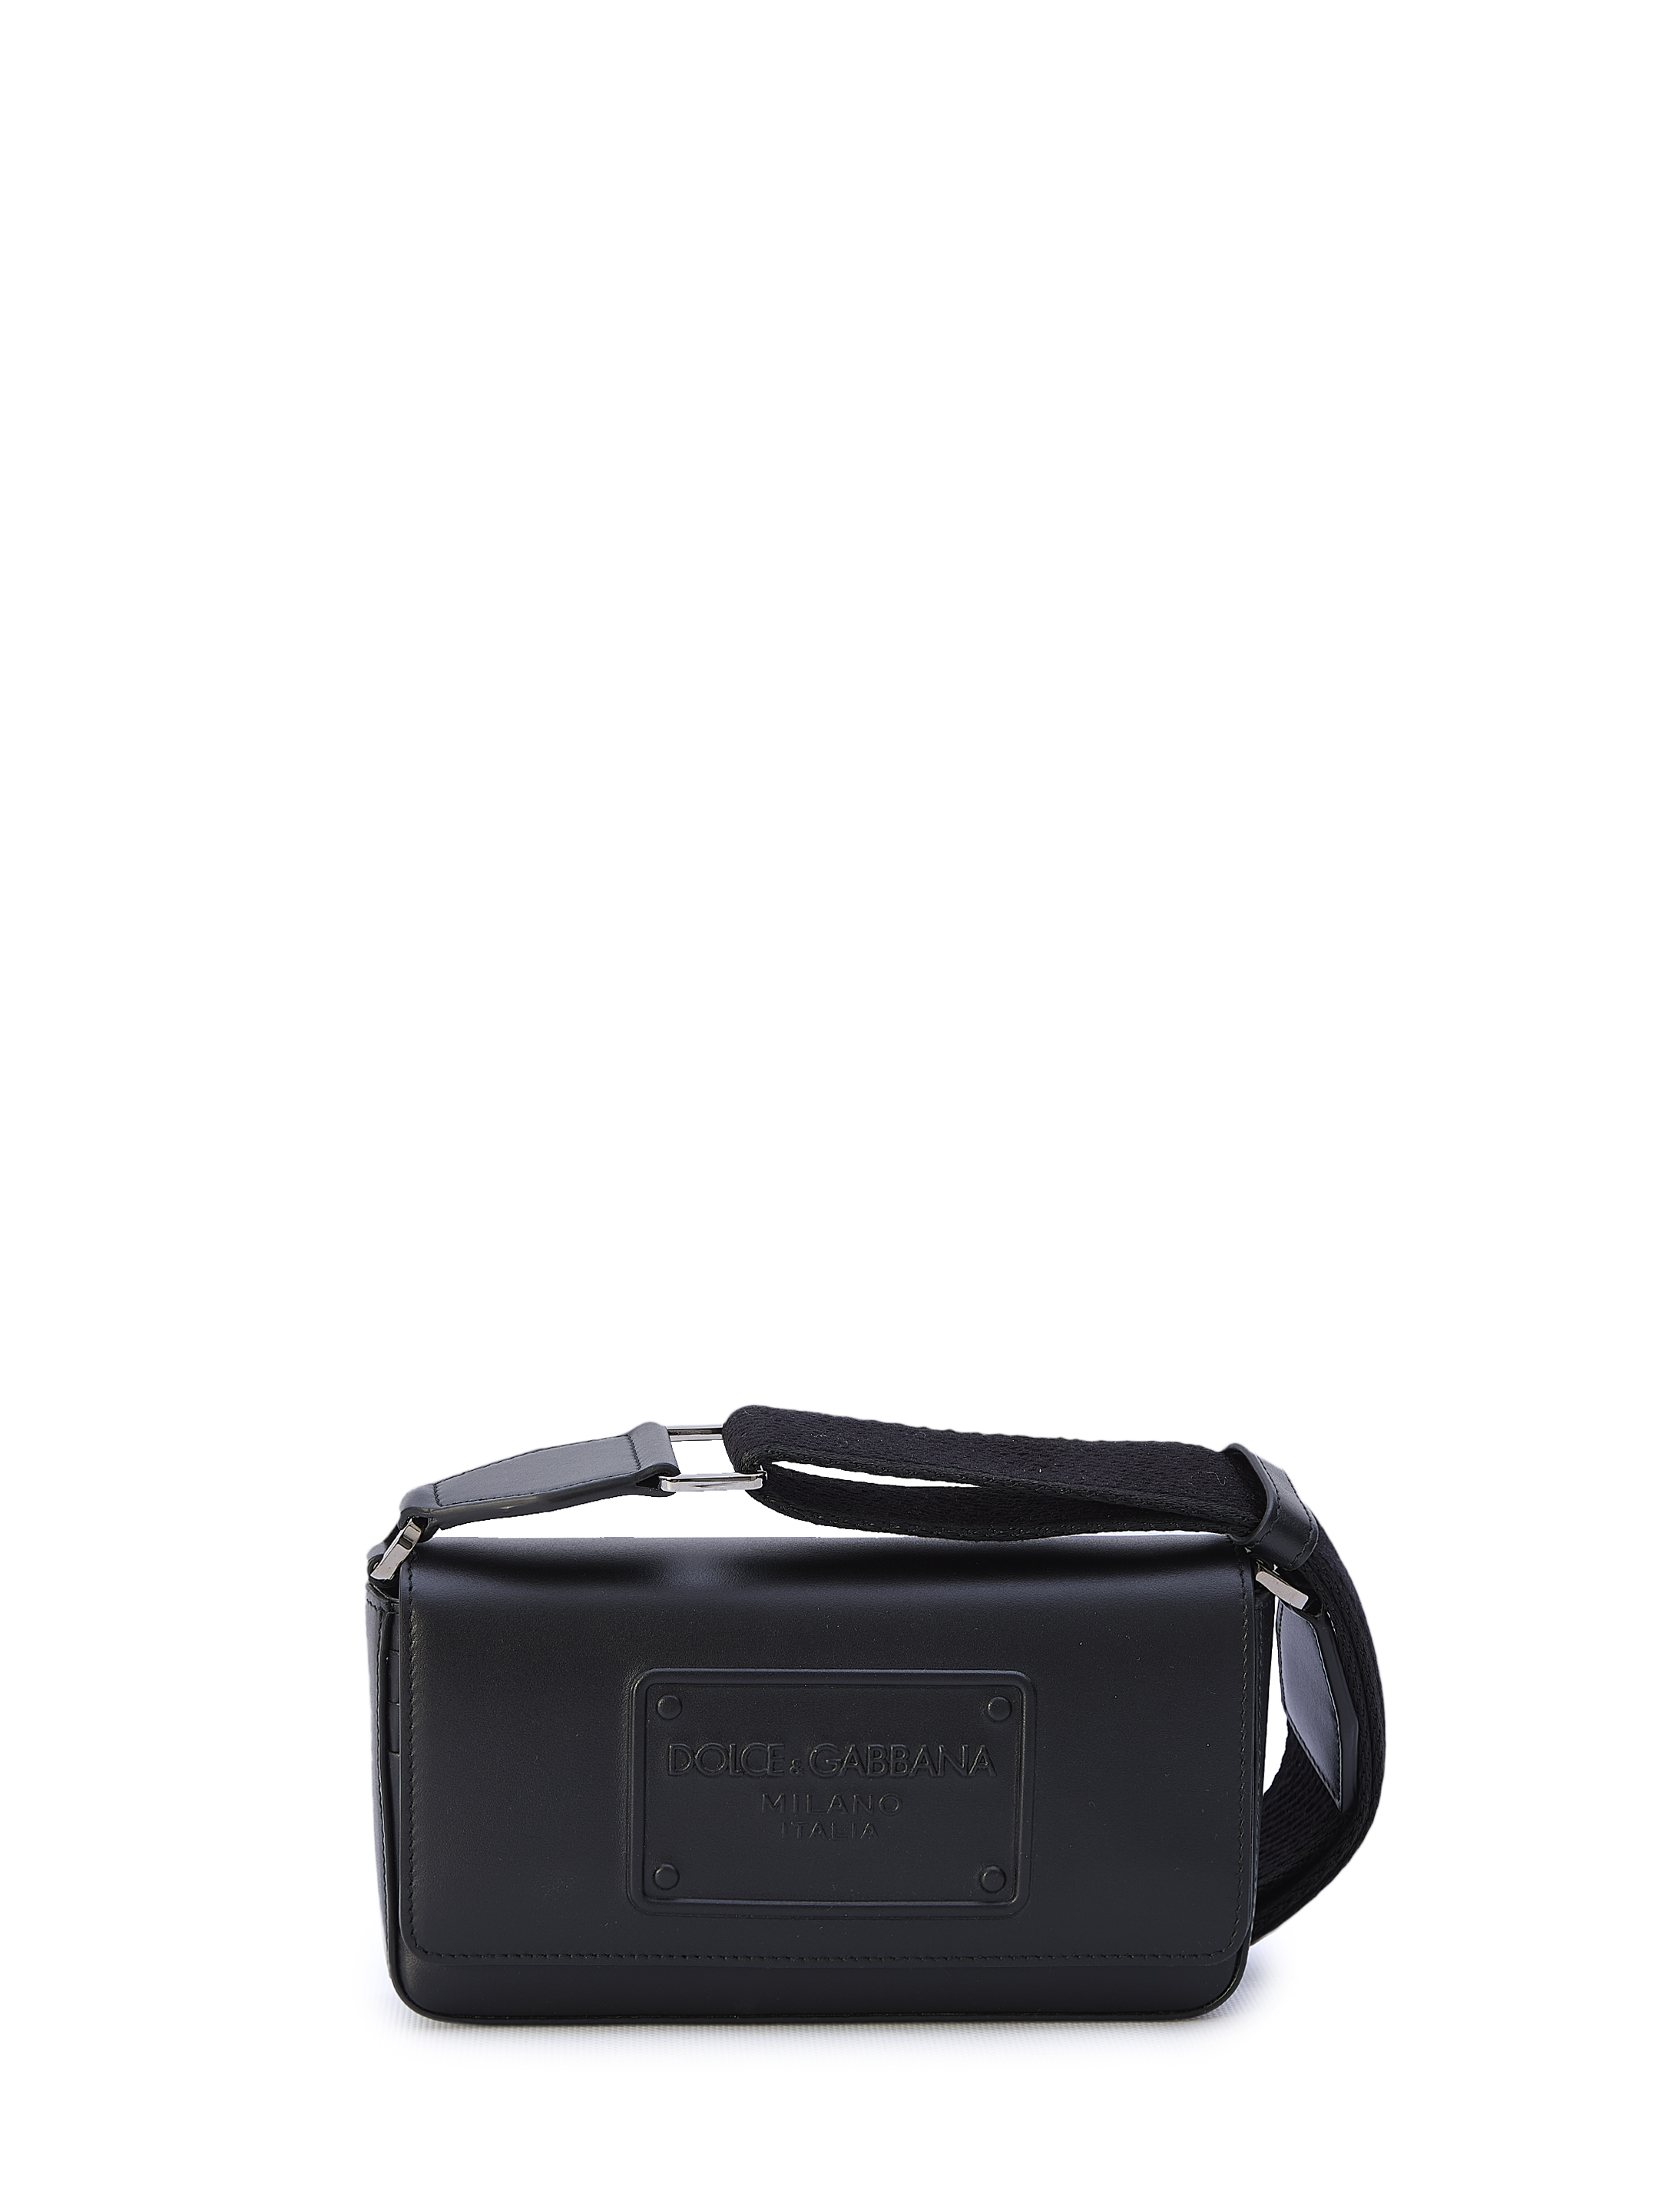 Мини сумка Dolce&Gabbana Calfskin, черный дорожная сумка с одним отделением и съемным ремнем blackwood albion black